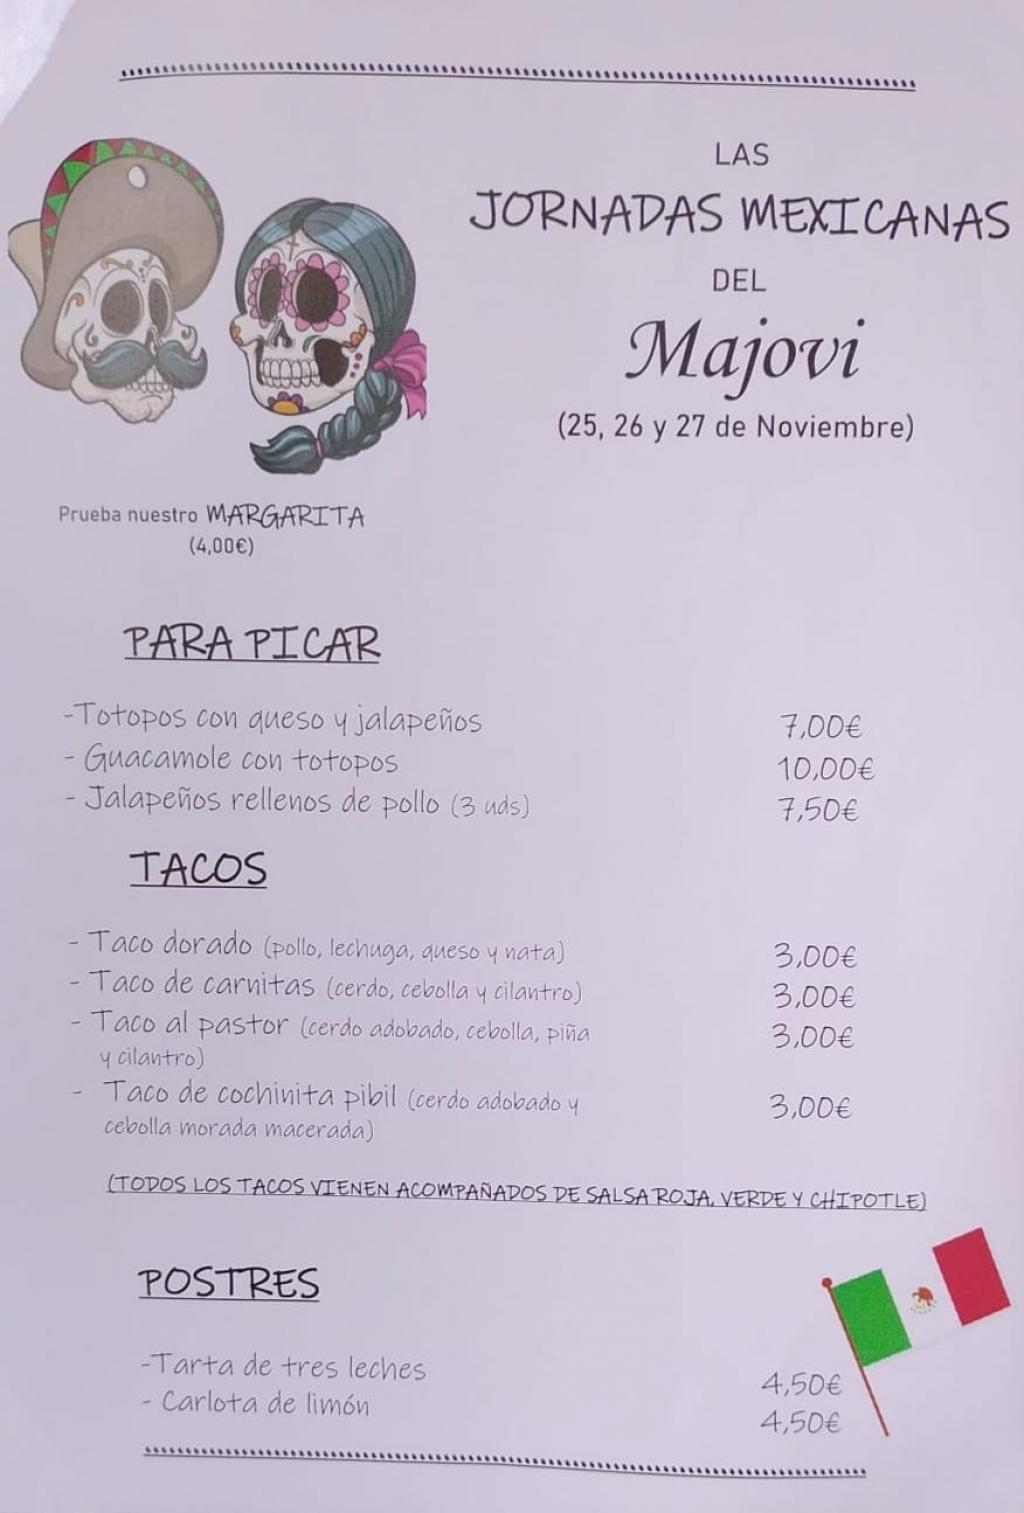 El Tapin - El Restaurante Majovi organiza las Jornadas Mexicanas del 25 al 27 de noviembre